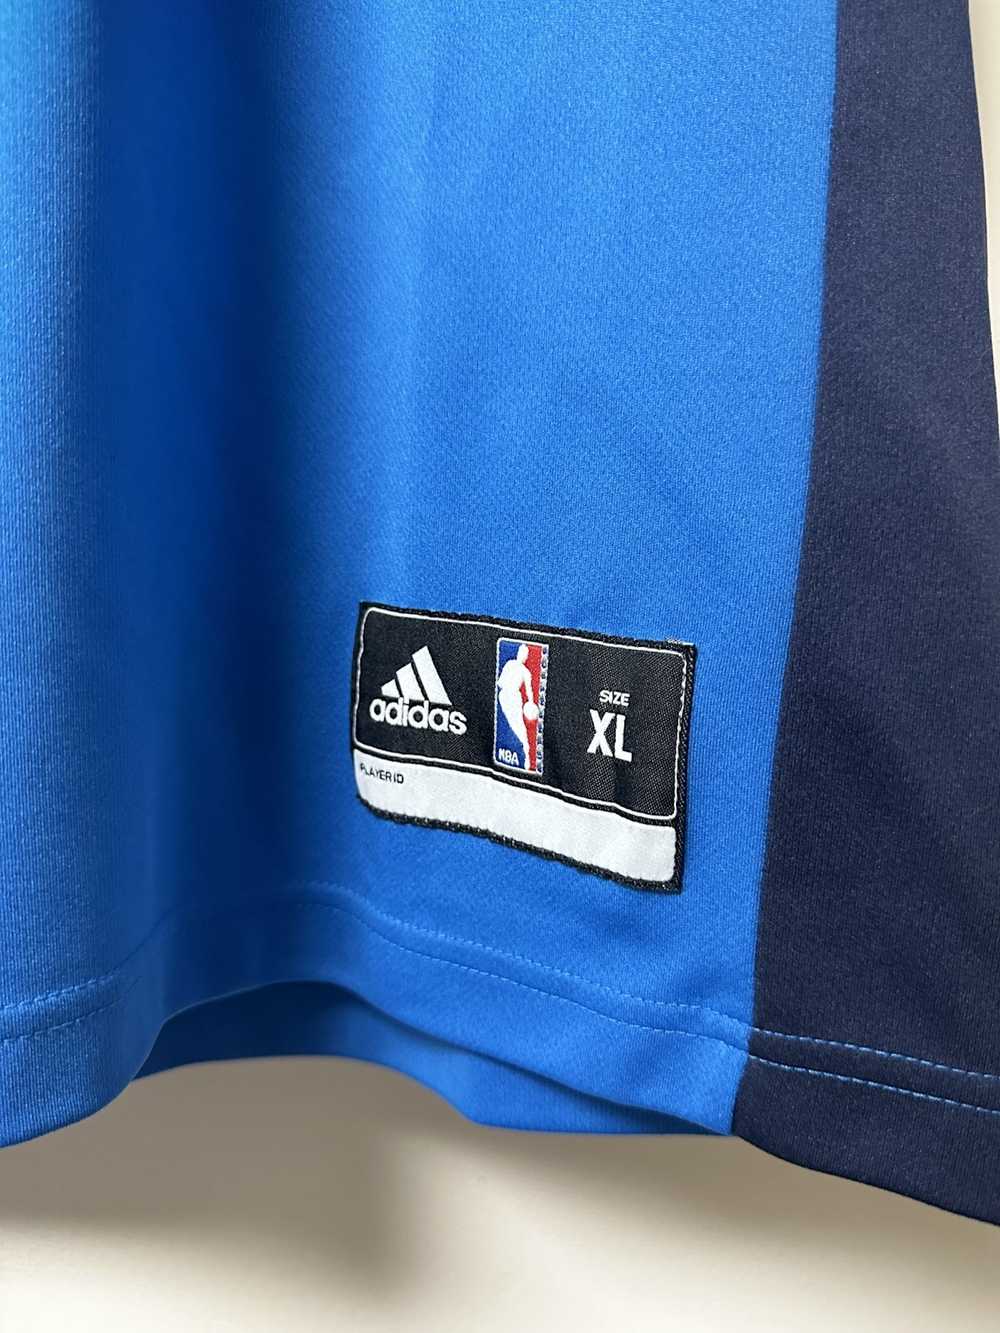 Adidas NBA Authentics Kevin Durant #35 Oklahoma City Thunder Sewn Jersey  Size 48